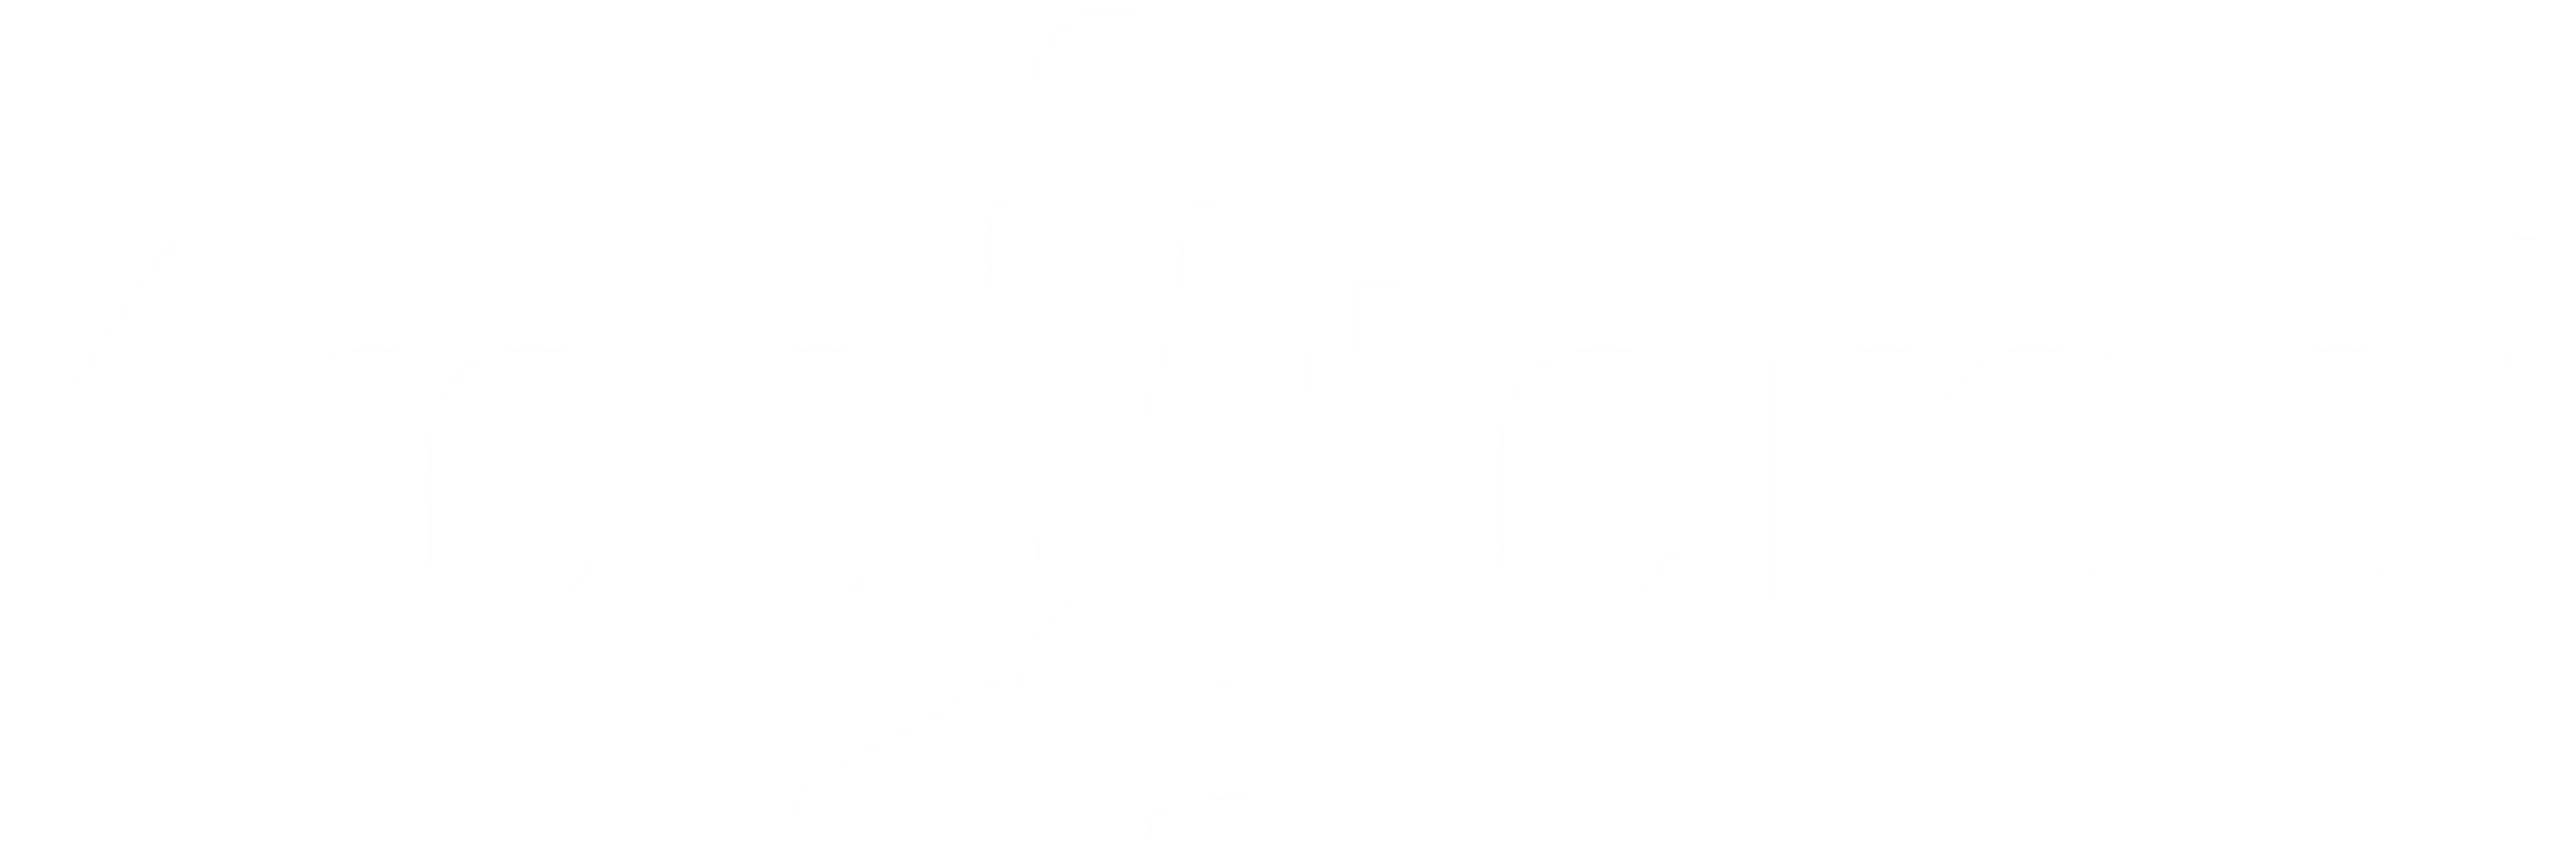 Kropiterapi logo-white